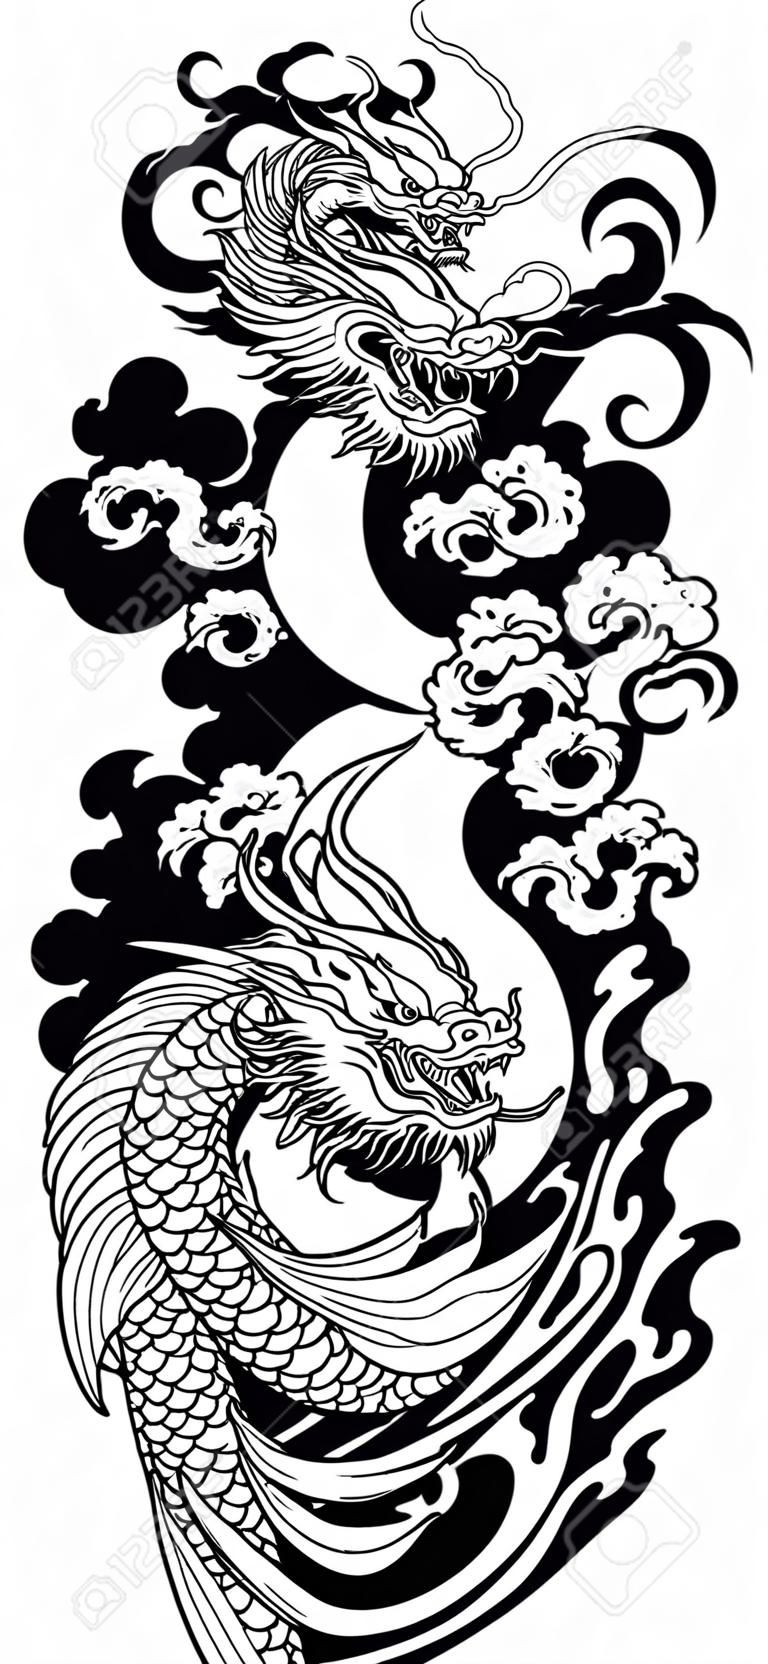 Dragão chinês ou do leste asiático com ondas de água e peixes japoneses da carpa de koi que nadam acima. Tatuagem. Ilustração vetorial